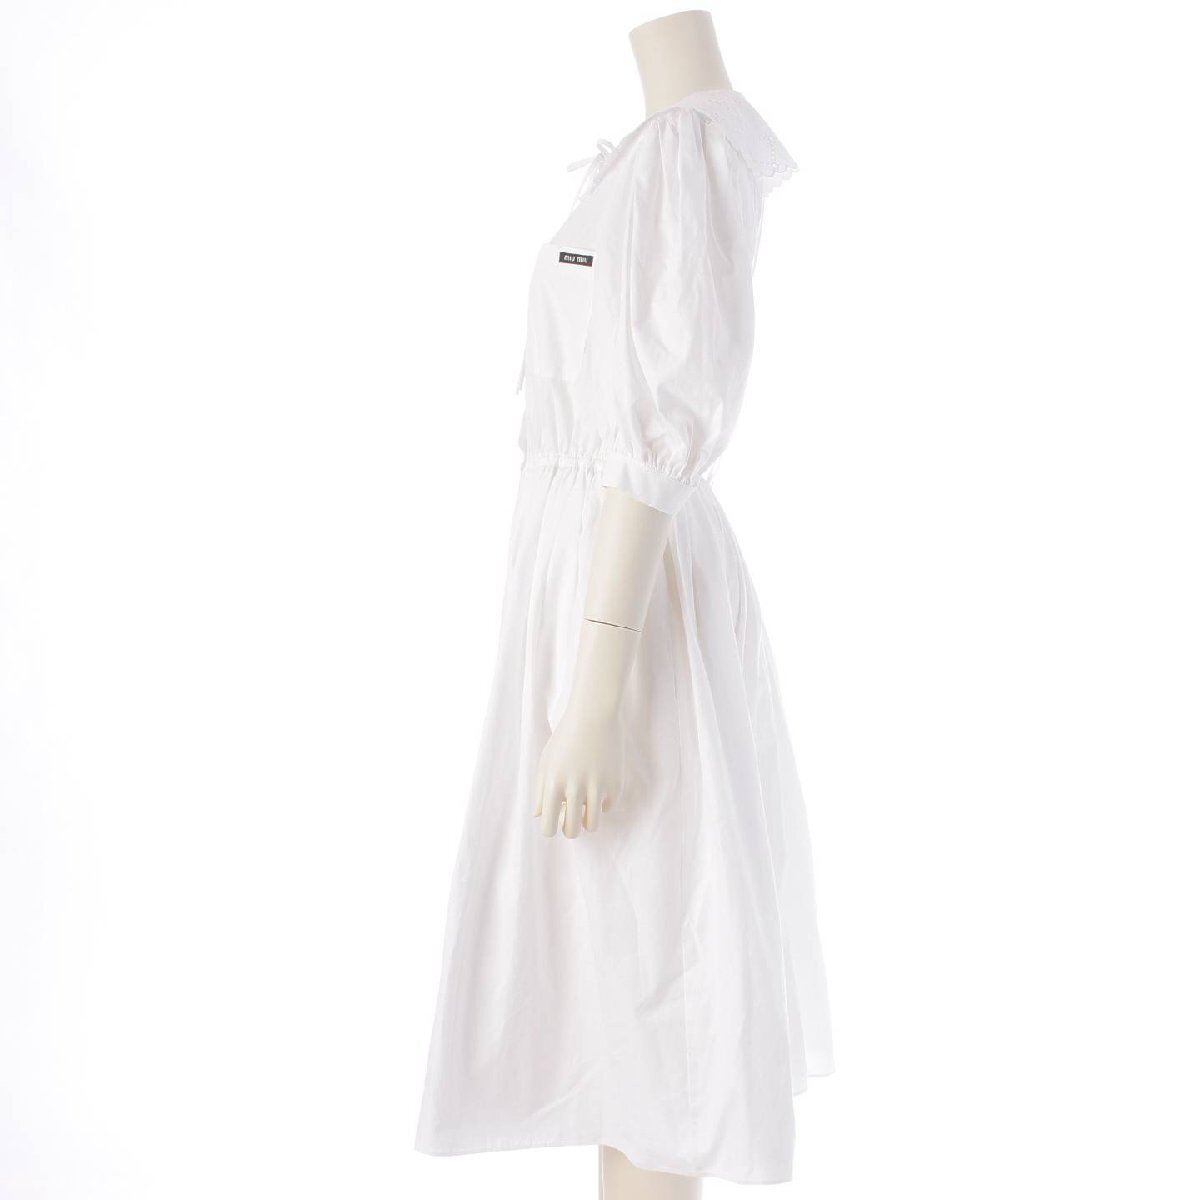 【...】Miu Miu　 2009 год   белый ...  дизайн  ворот   лента   хлопок    платье    одним лотом   белый  40 【 подержанный товар 】207635